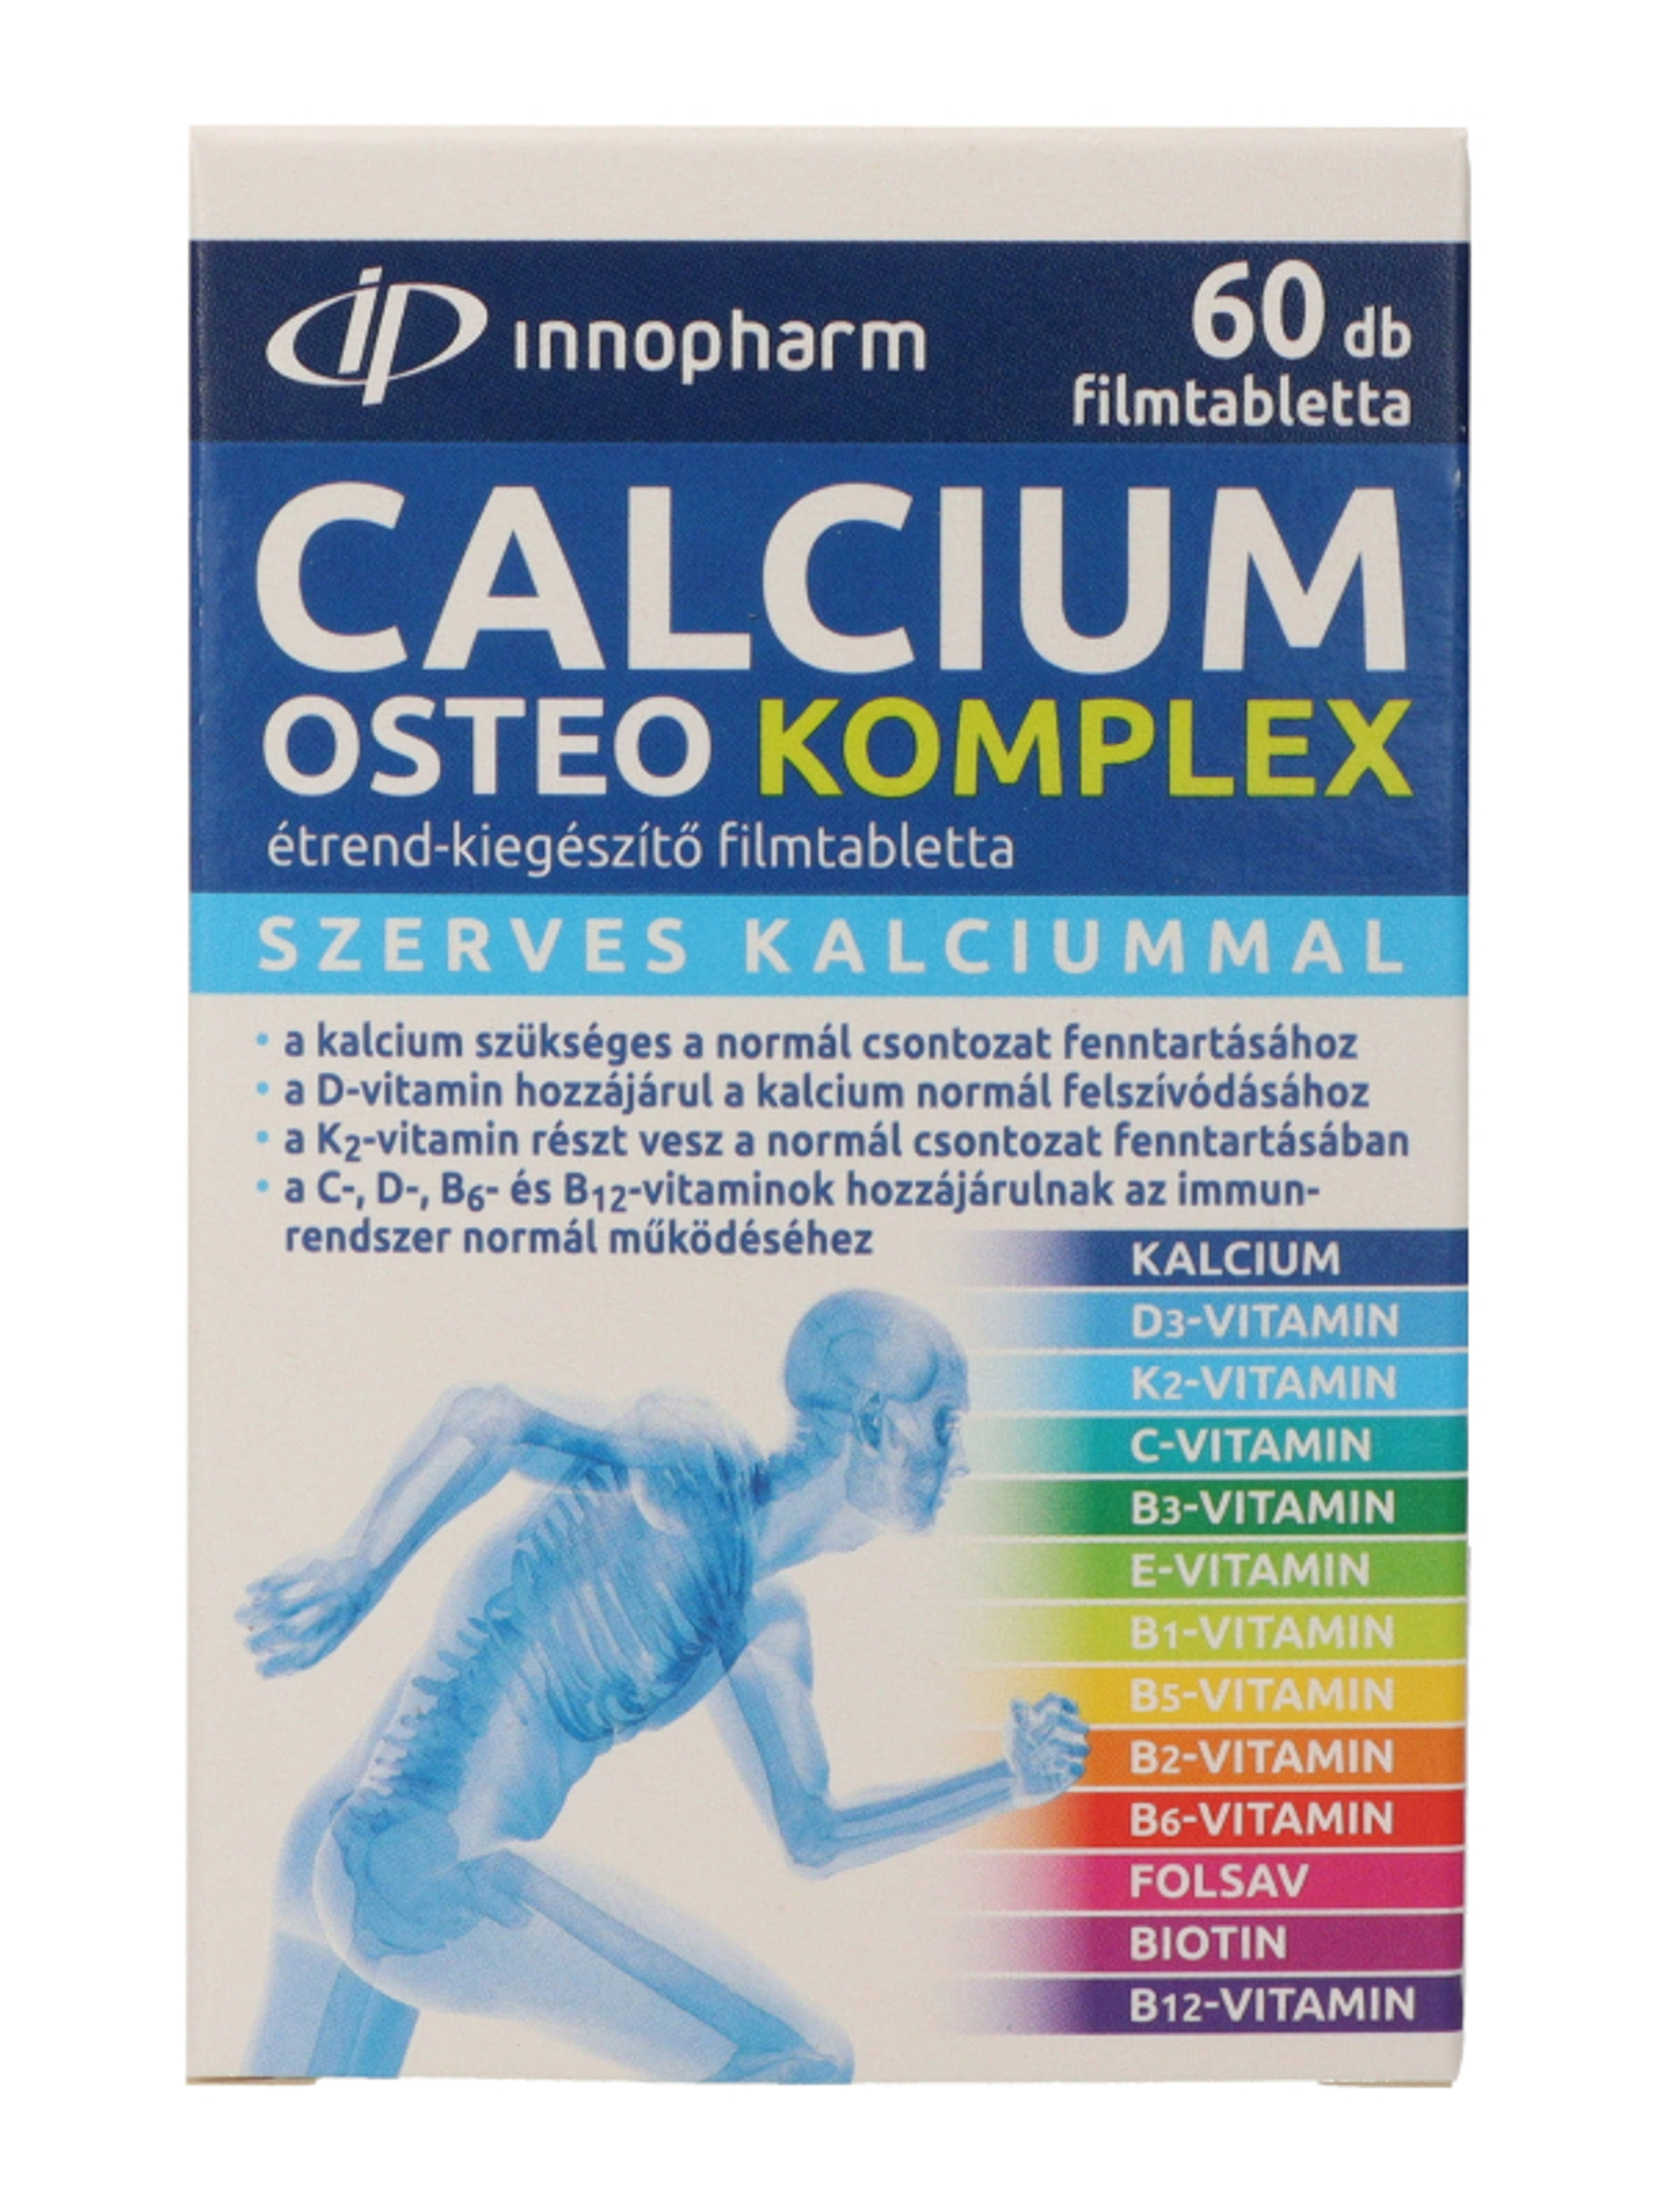 Innopharm Kalcium Osteo komplex étrendkiegészítő filmtabletta - 60 db-2